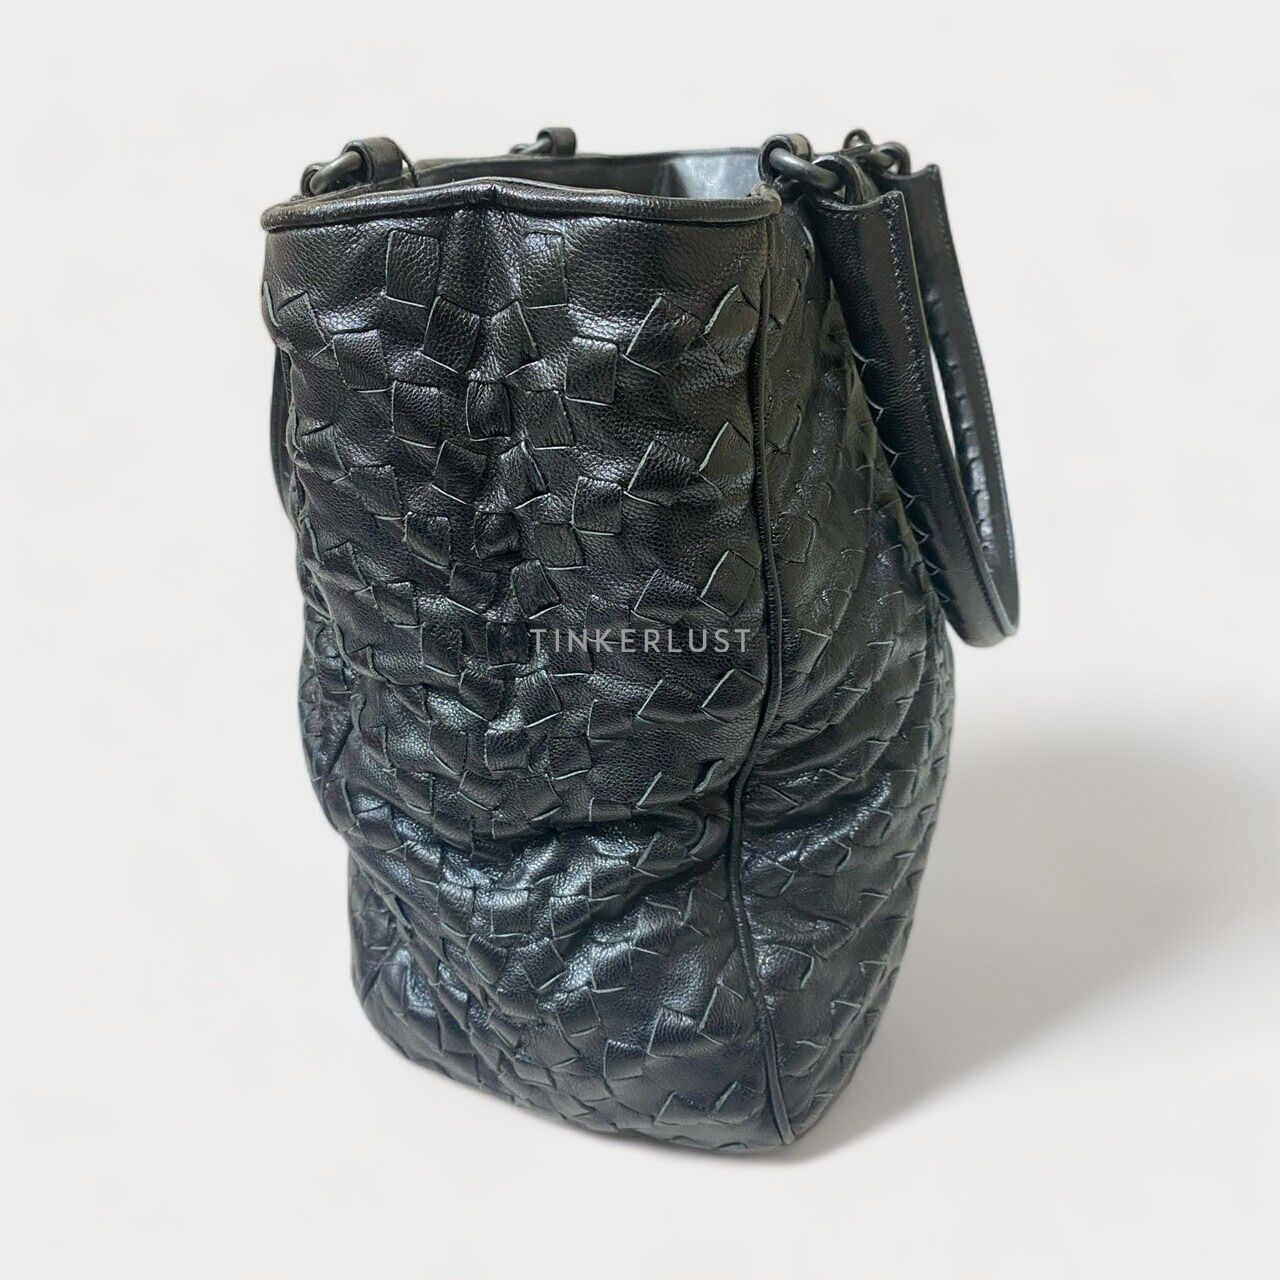 Bottega Veneta Intrecciato Black Tote Bag